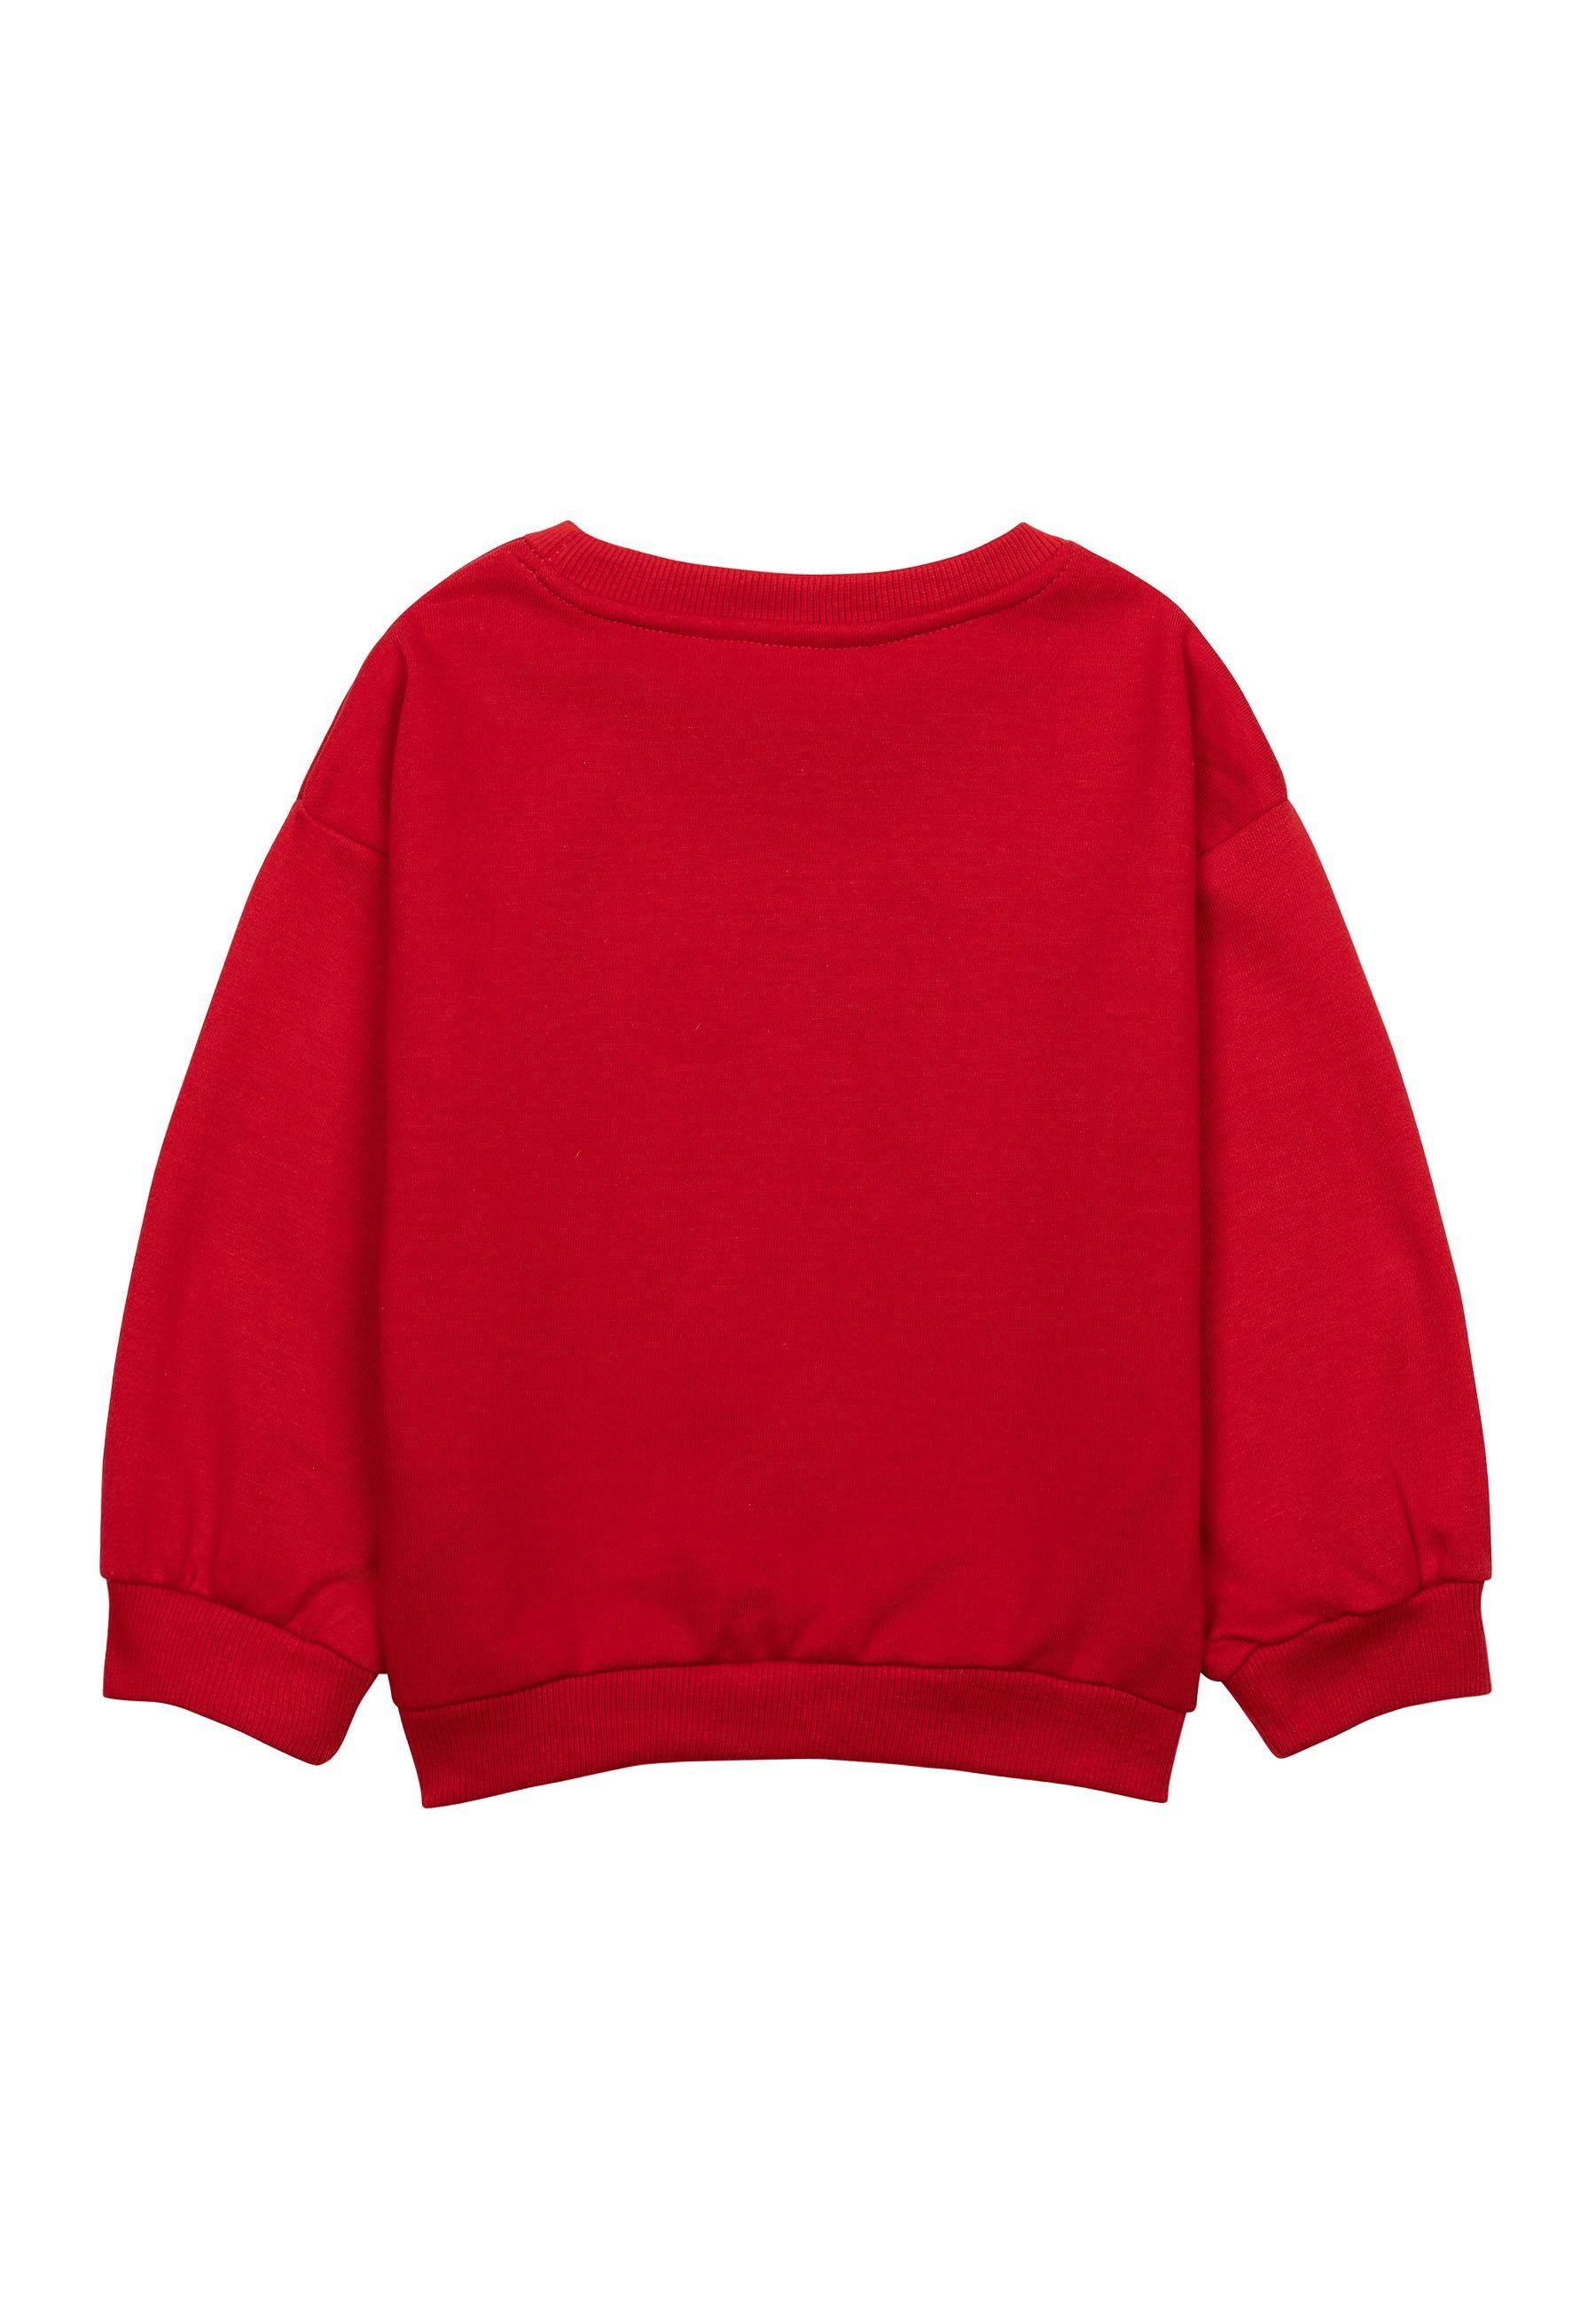 MINOTI Sweatshirt Muster Rot Mädchen (1y-8y) Sweatshirt mit